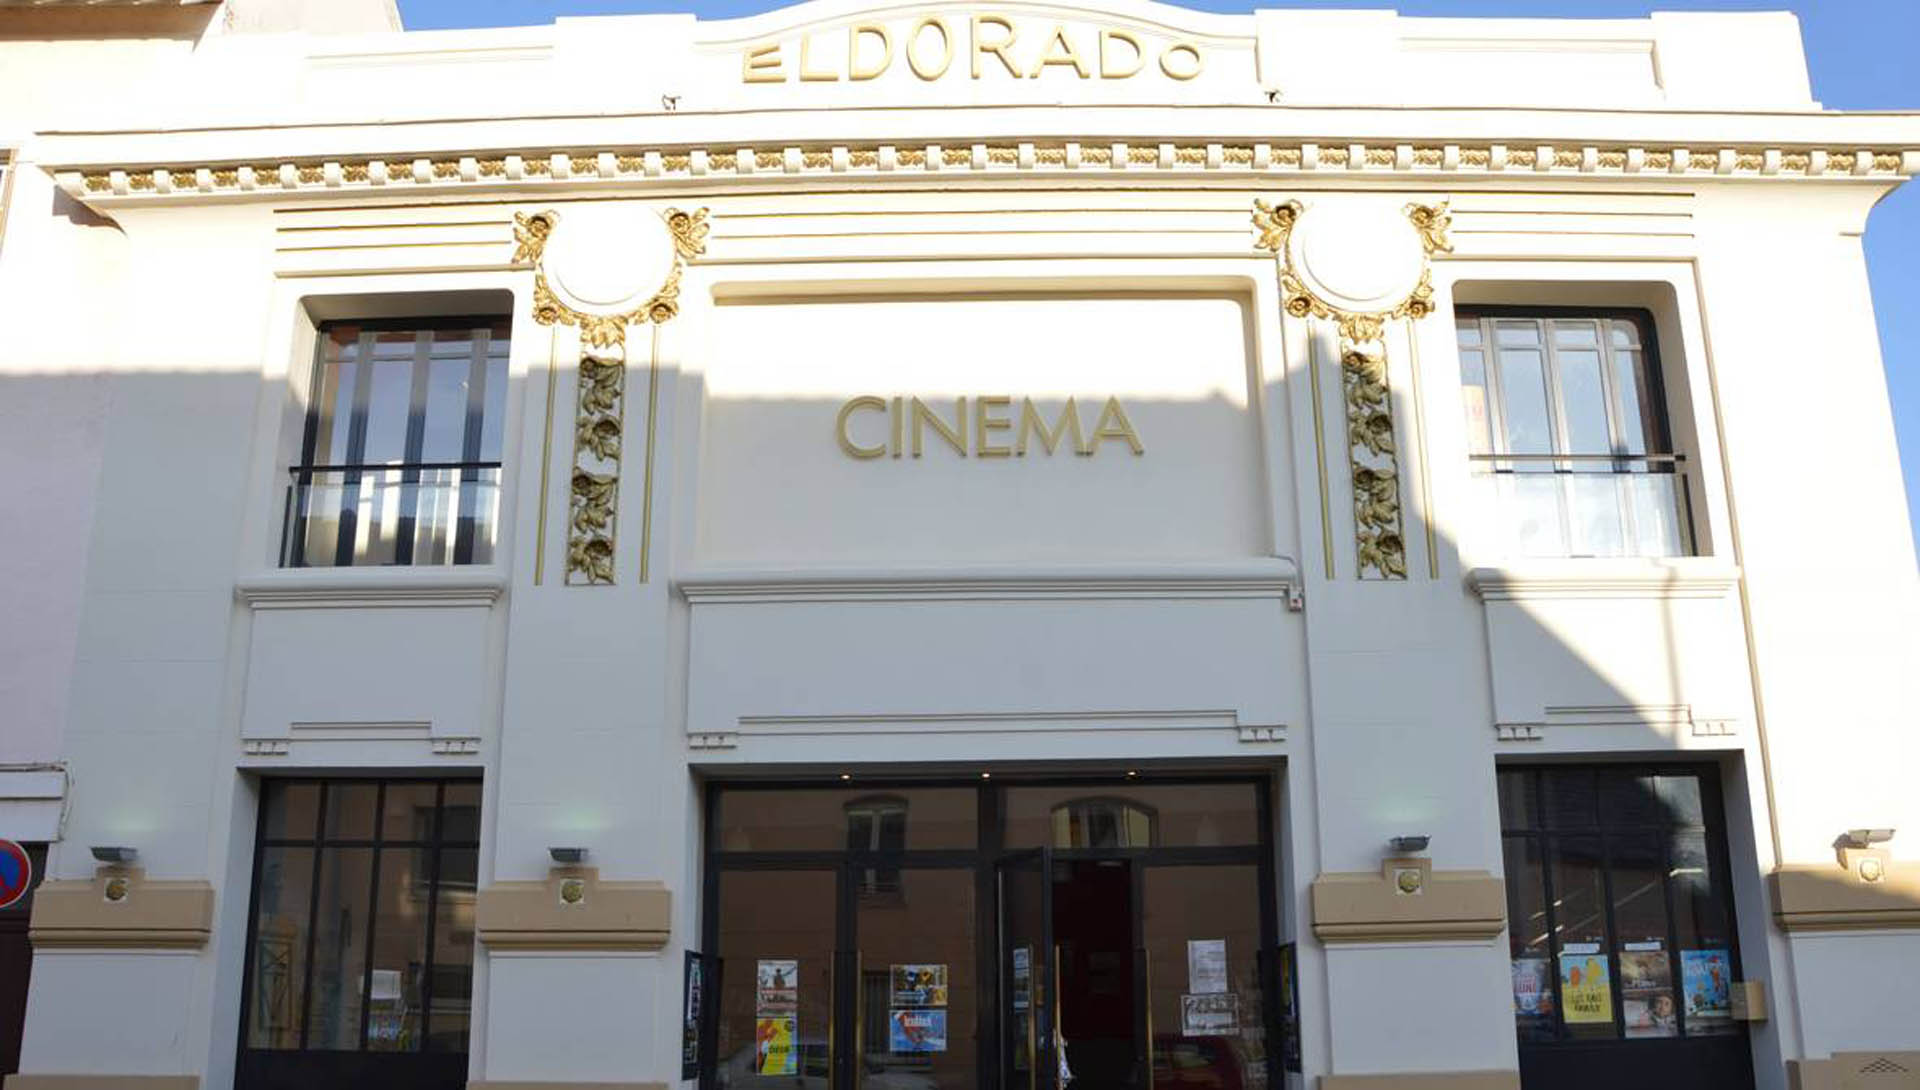 Façade du cinéma L'Eldorado de Dijon